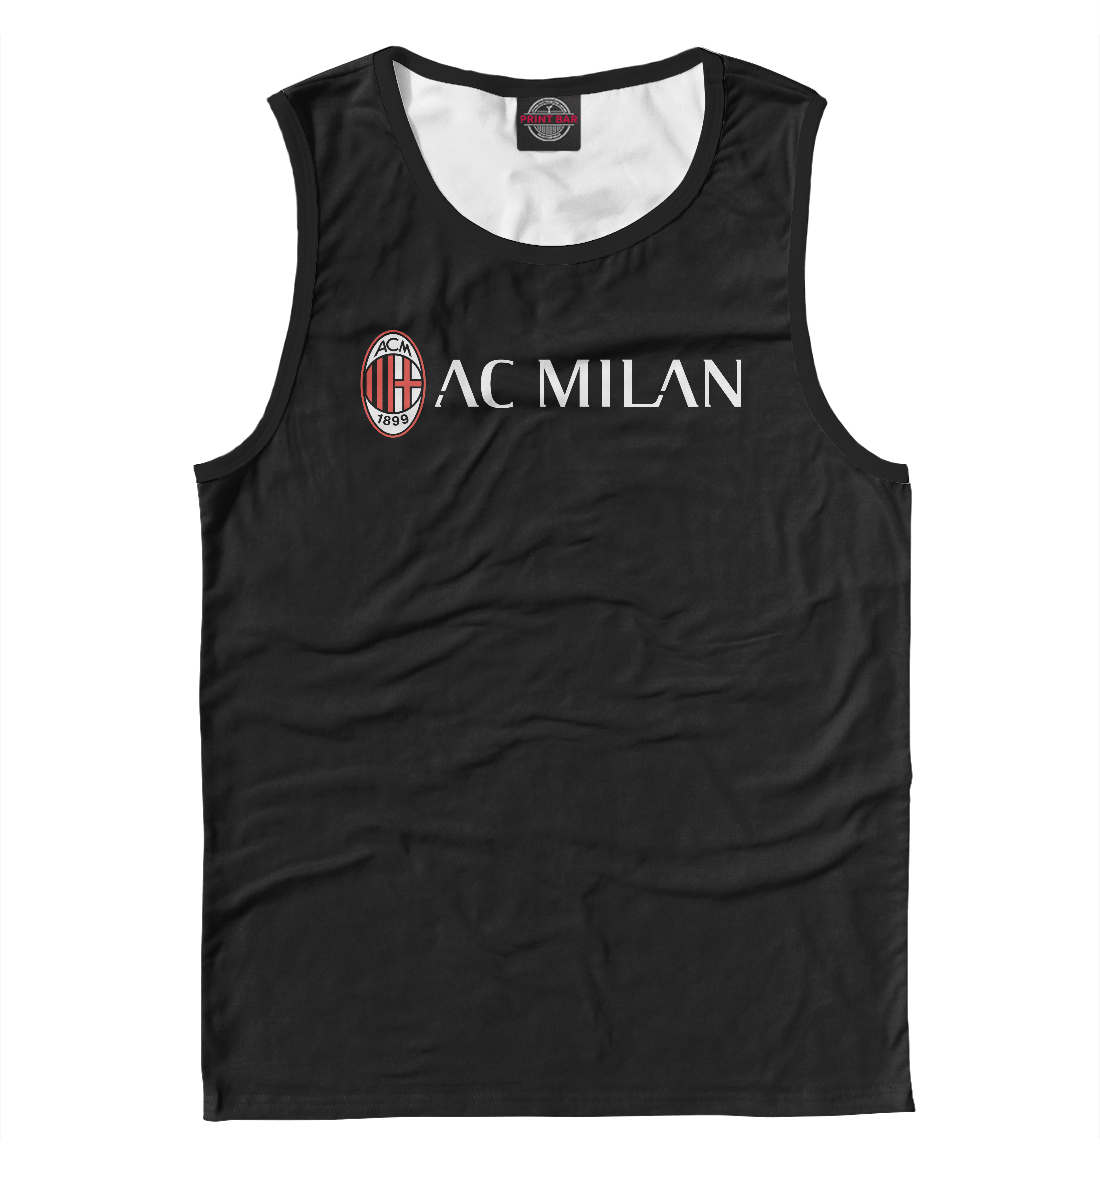 

AC Milan